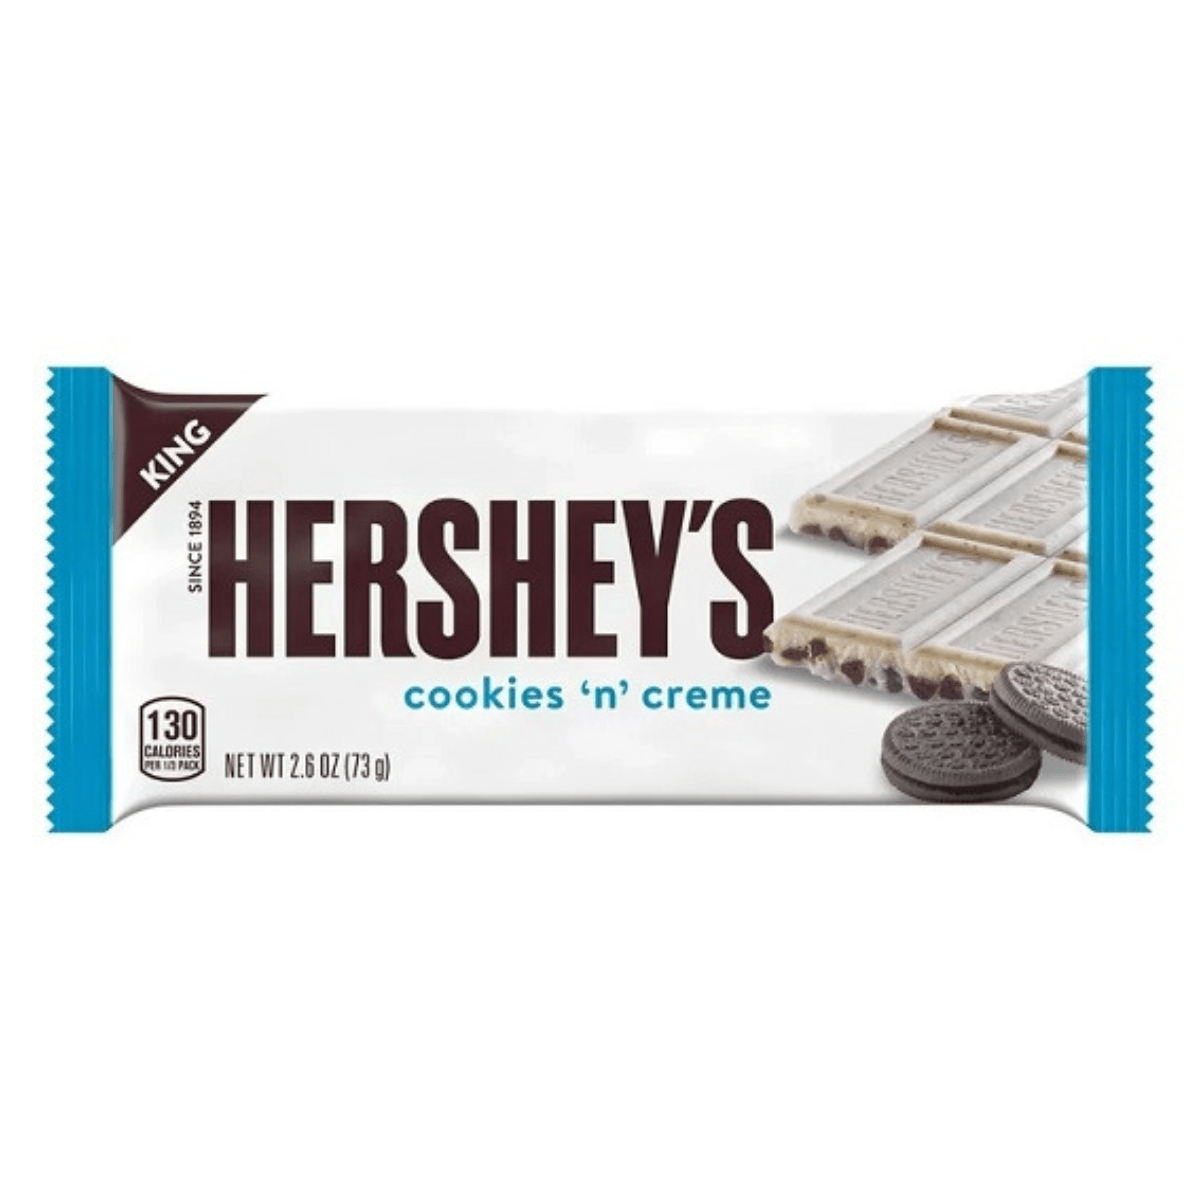 Hershey's Cookies 'n Creme 73g